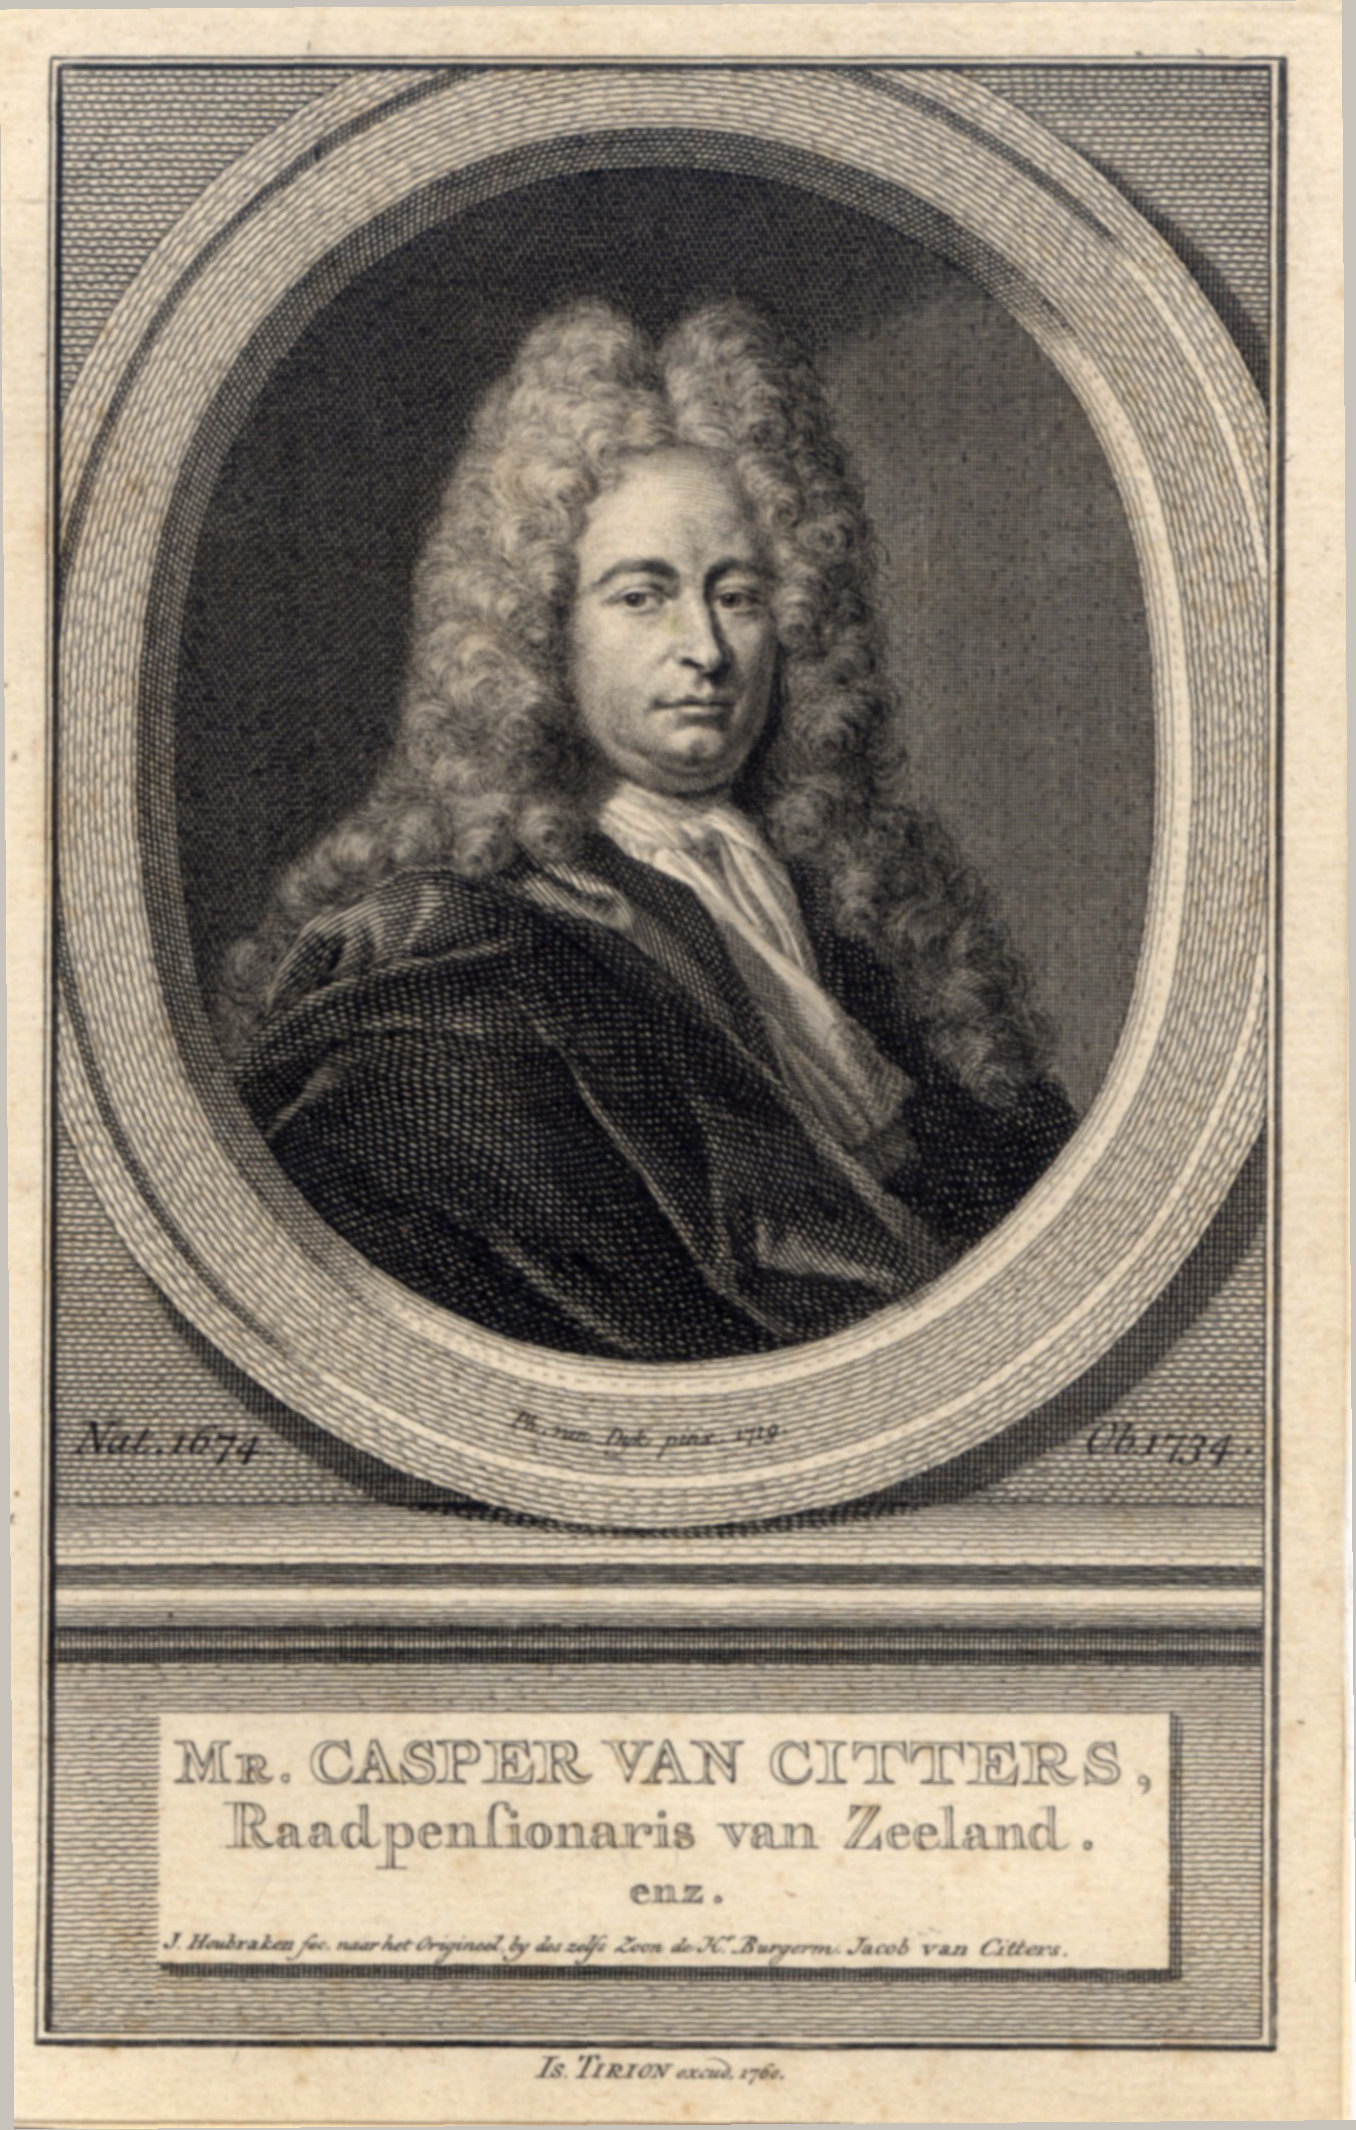 Mr. Casper van Citters, Raadspensionaris van zeeland, in 1719.